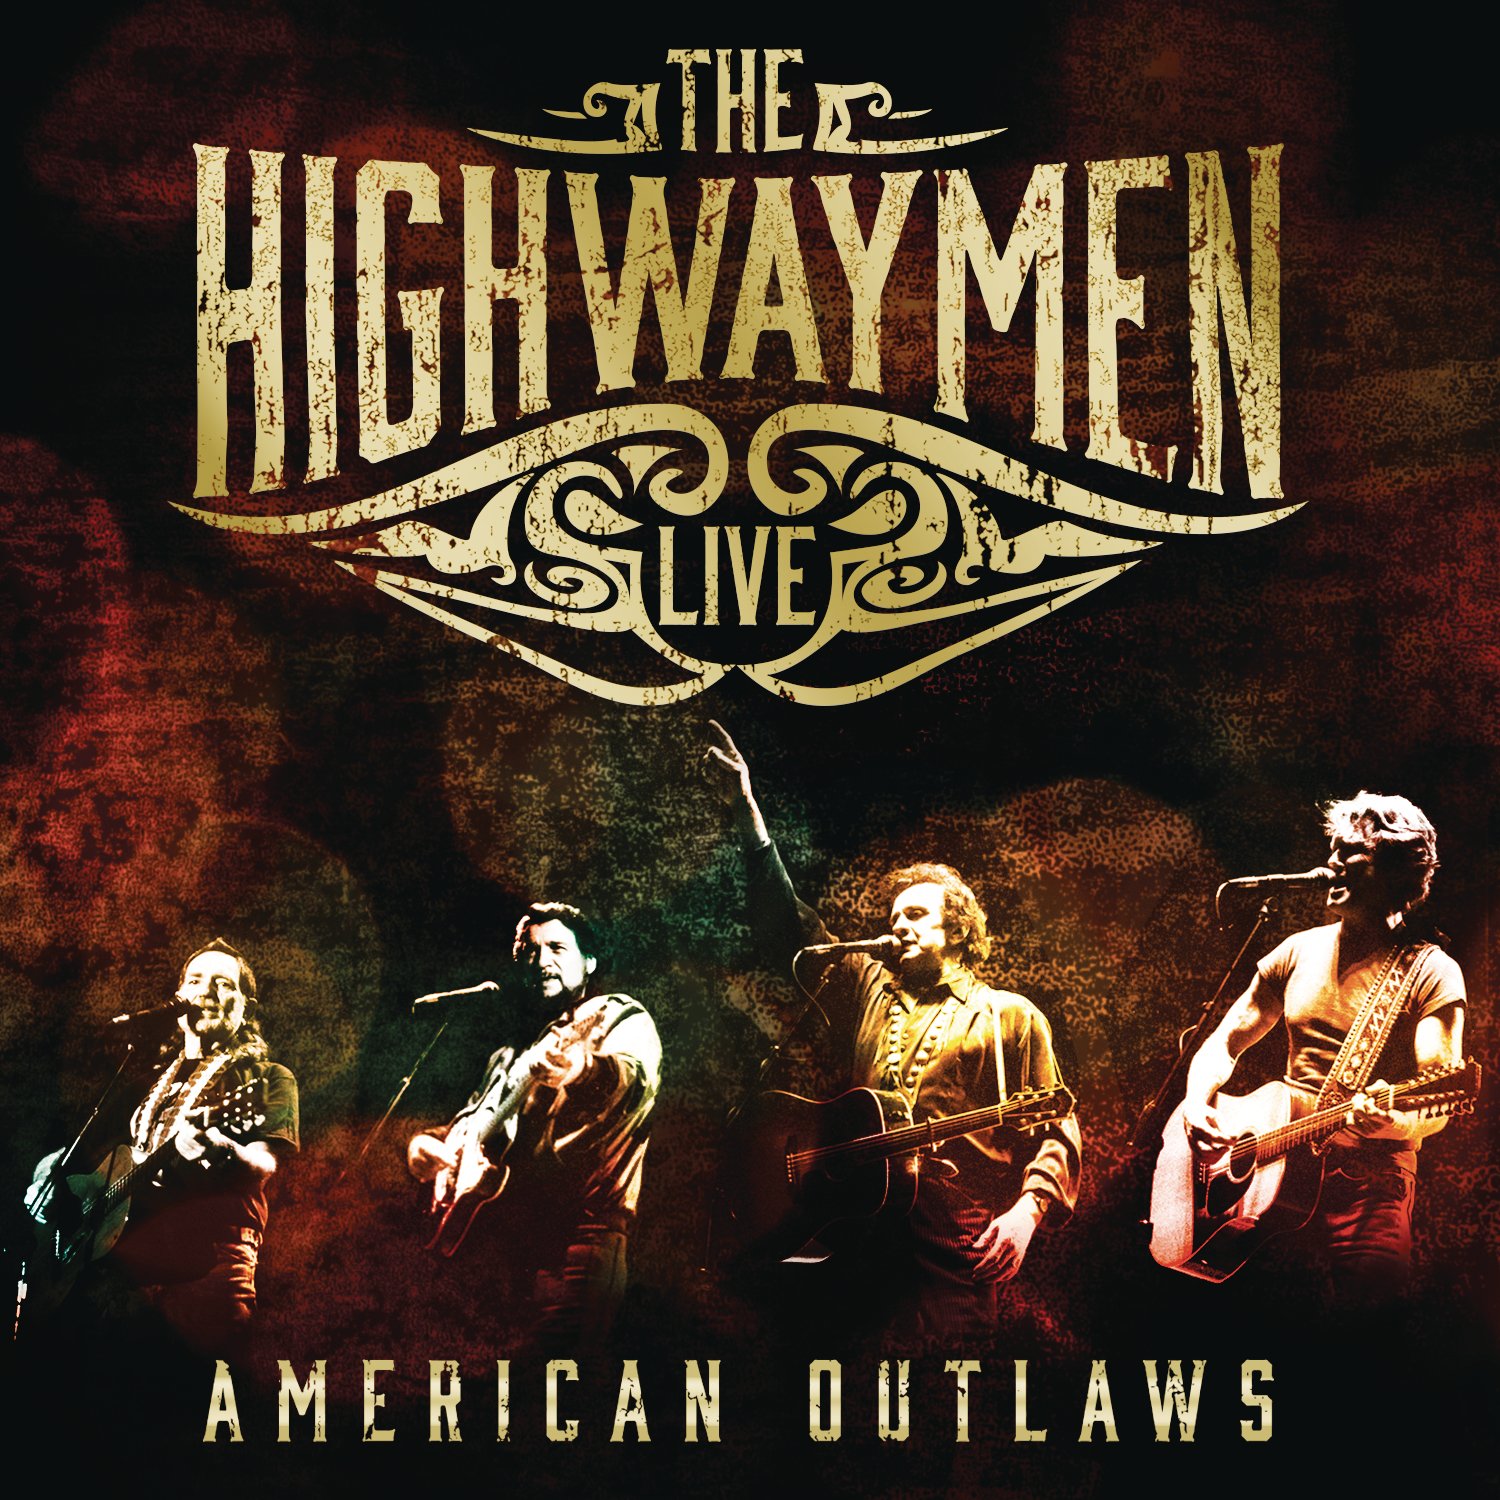 Highwaymen vinyl album